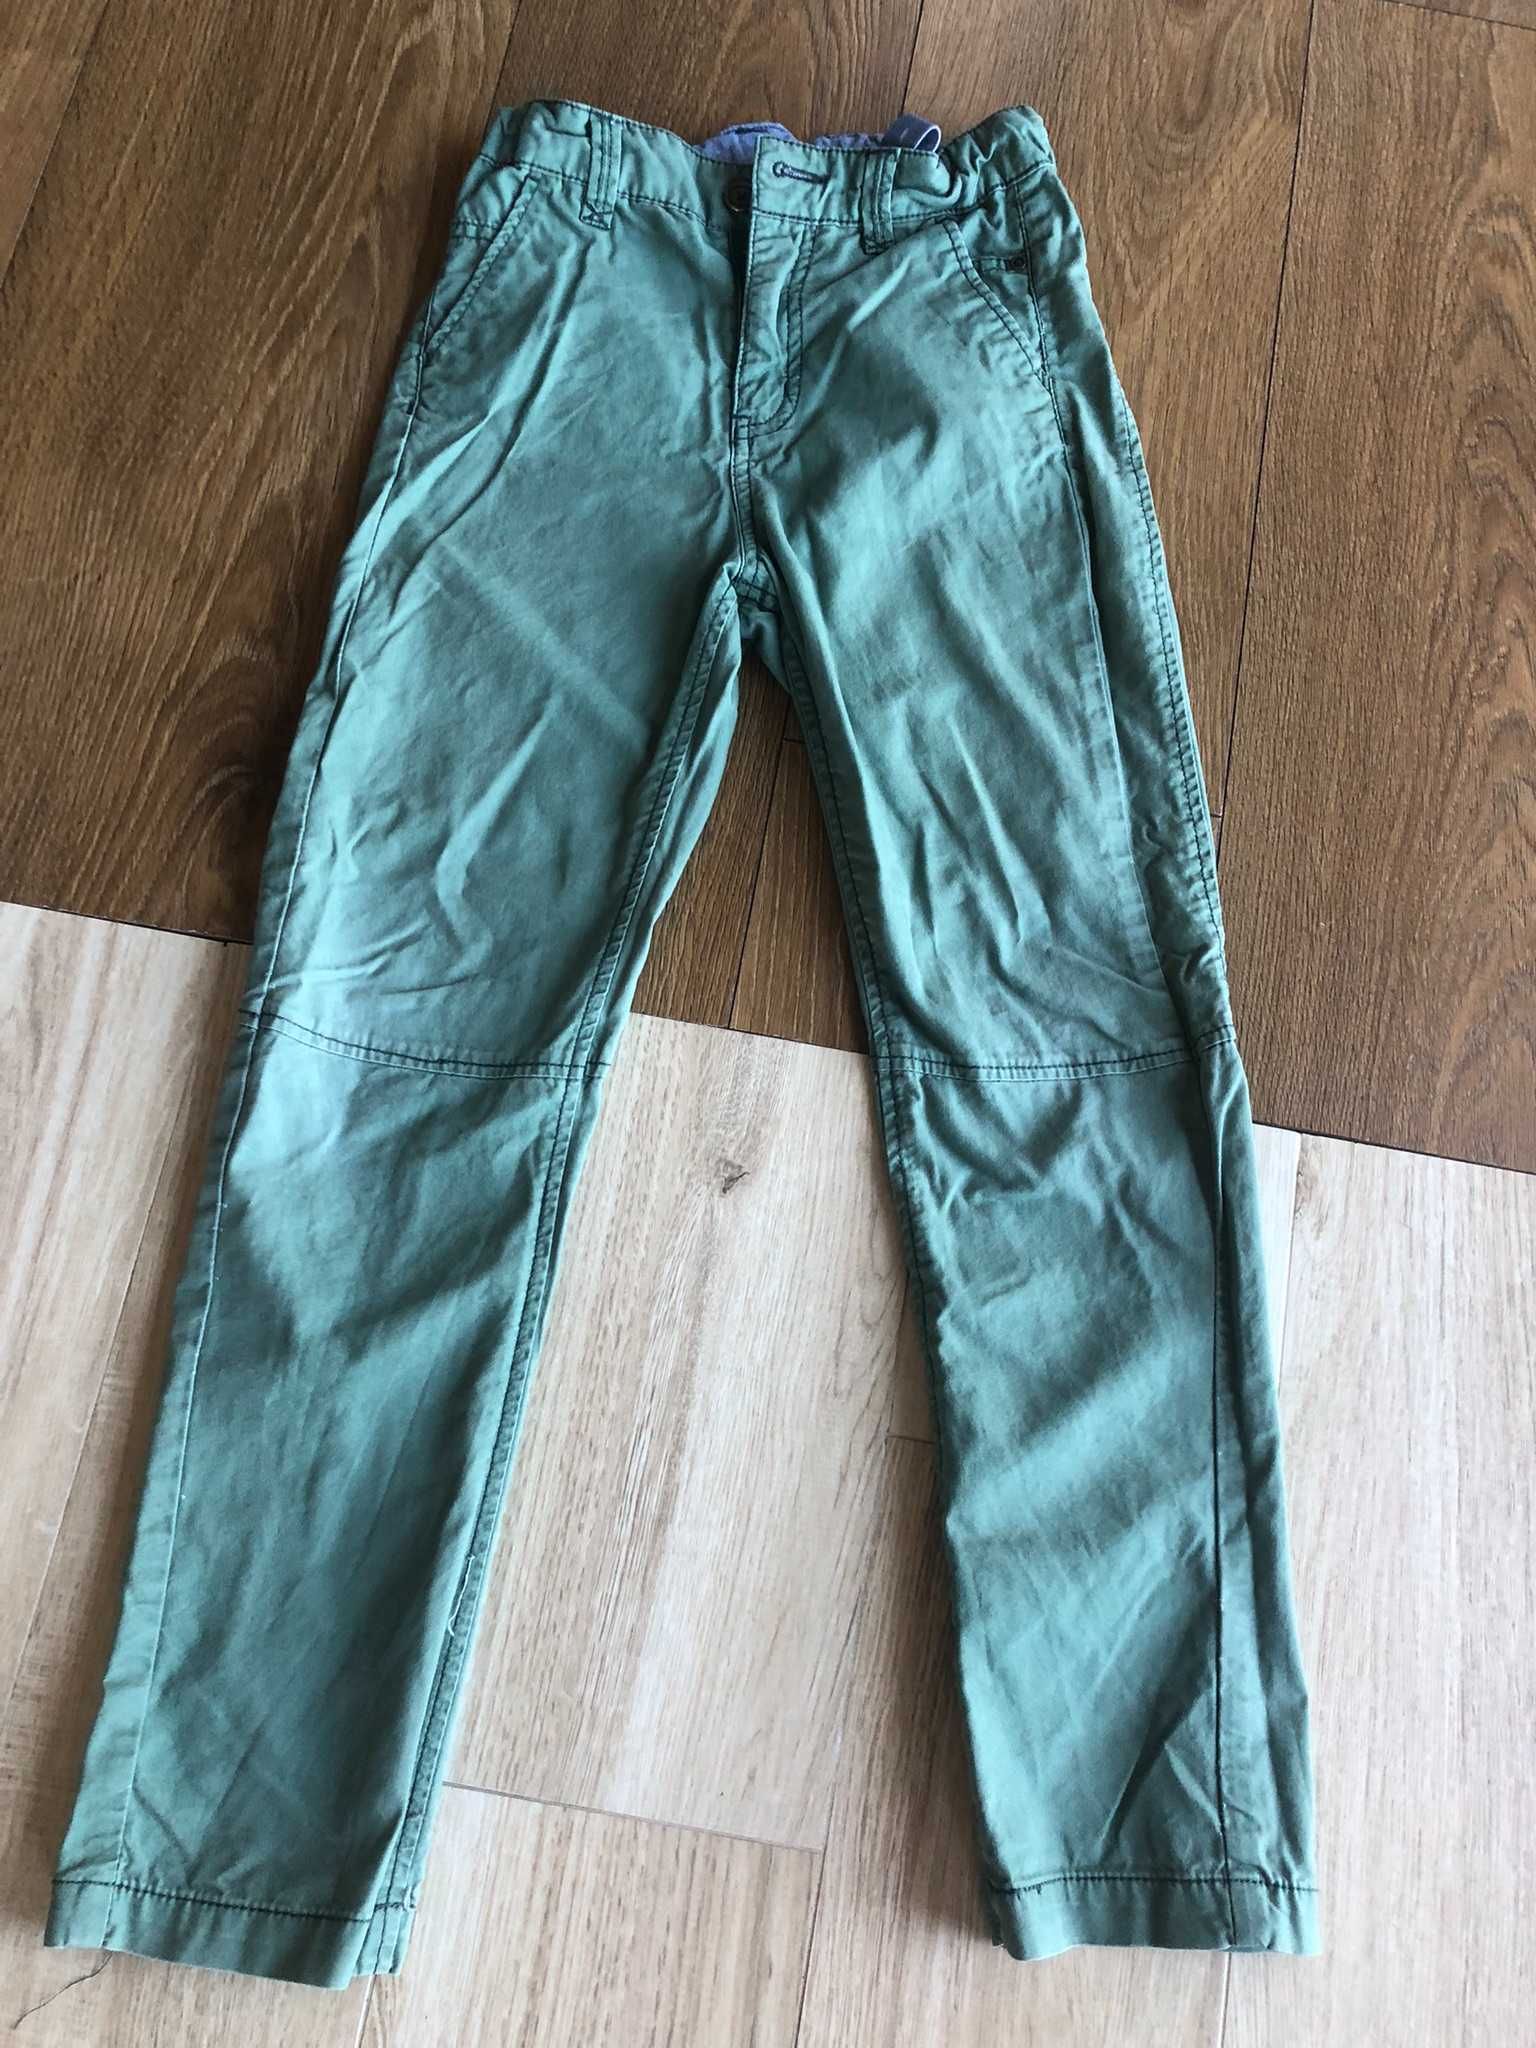 Spodnie chłopięce 128, zielone, H&M